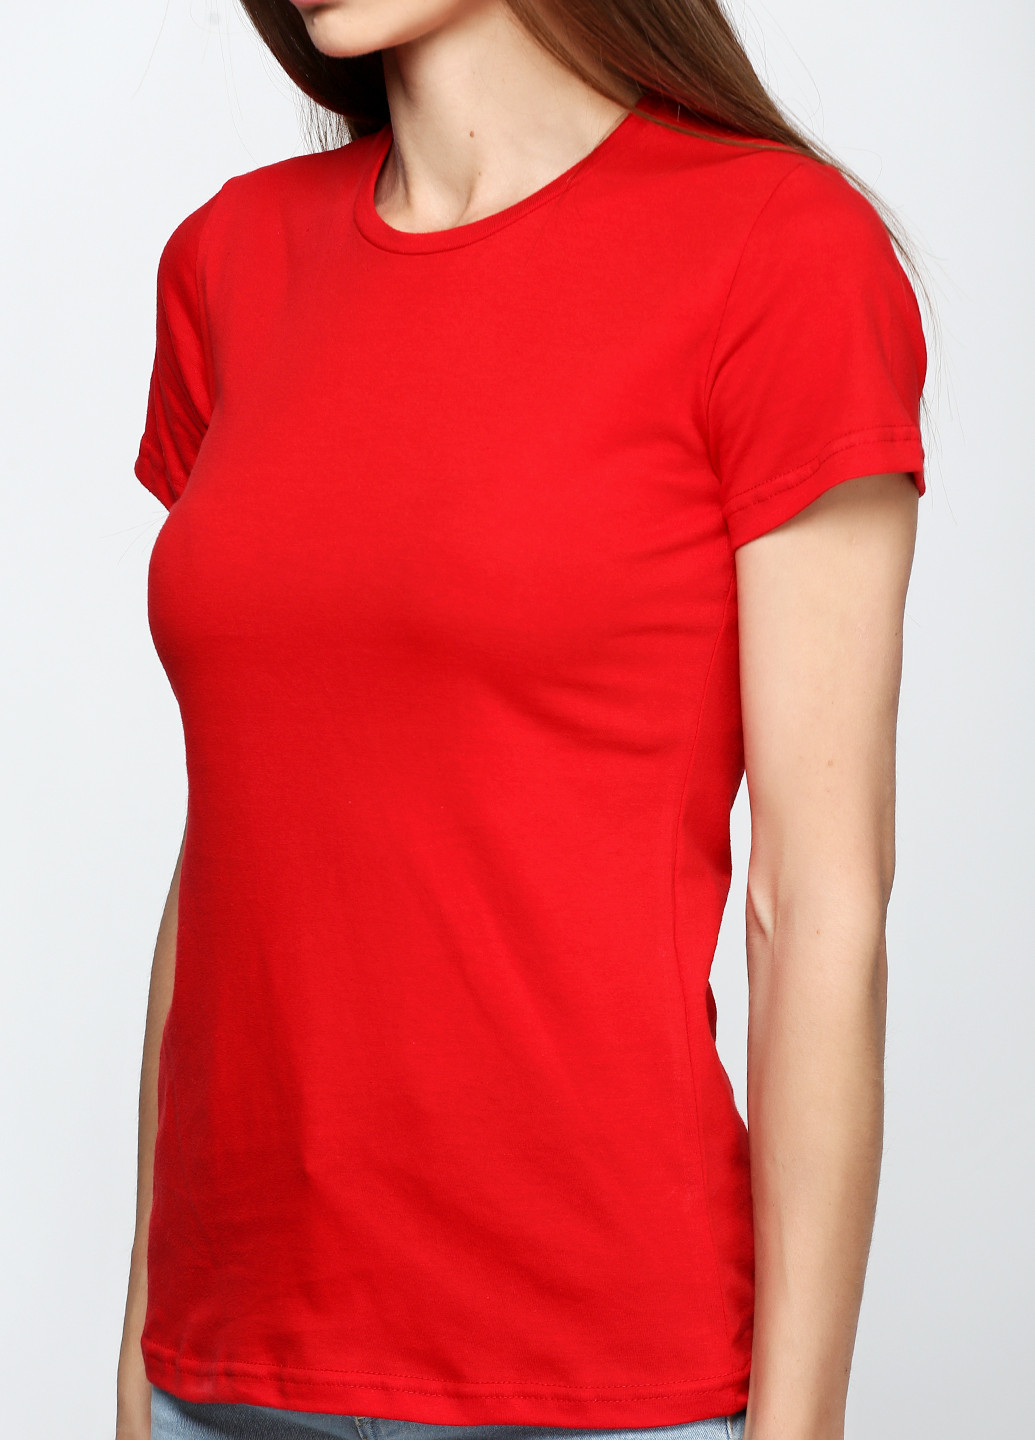 Червона літня футболка Роза